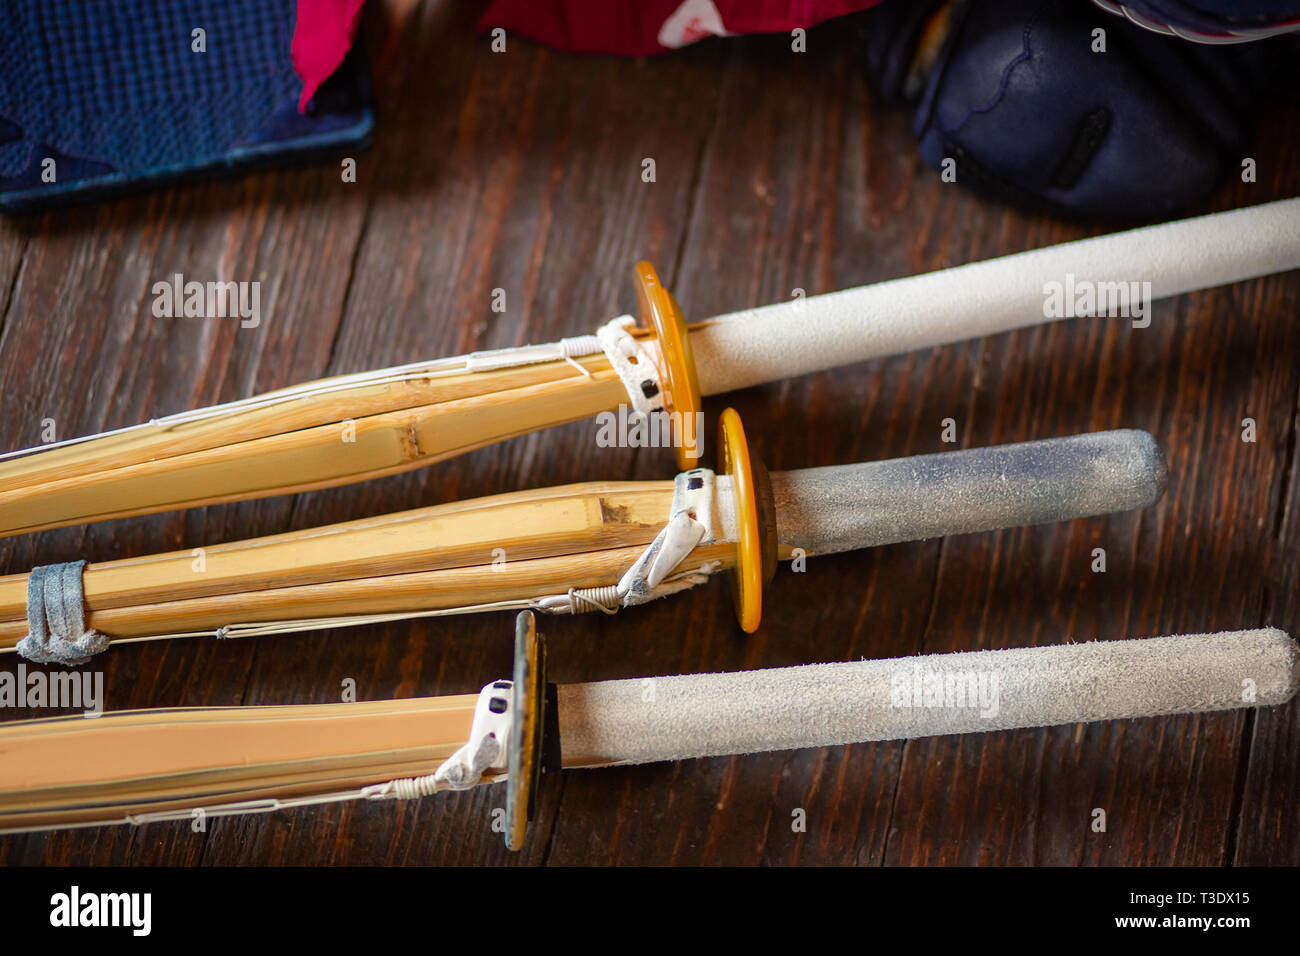 Les sabres de bambou close-up. Le kendo gants, casque et l'épée de bambou sur une surface en bois. Armure de kendo. Banque D'Images